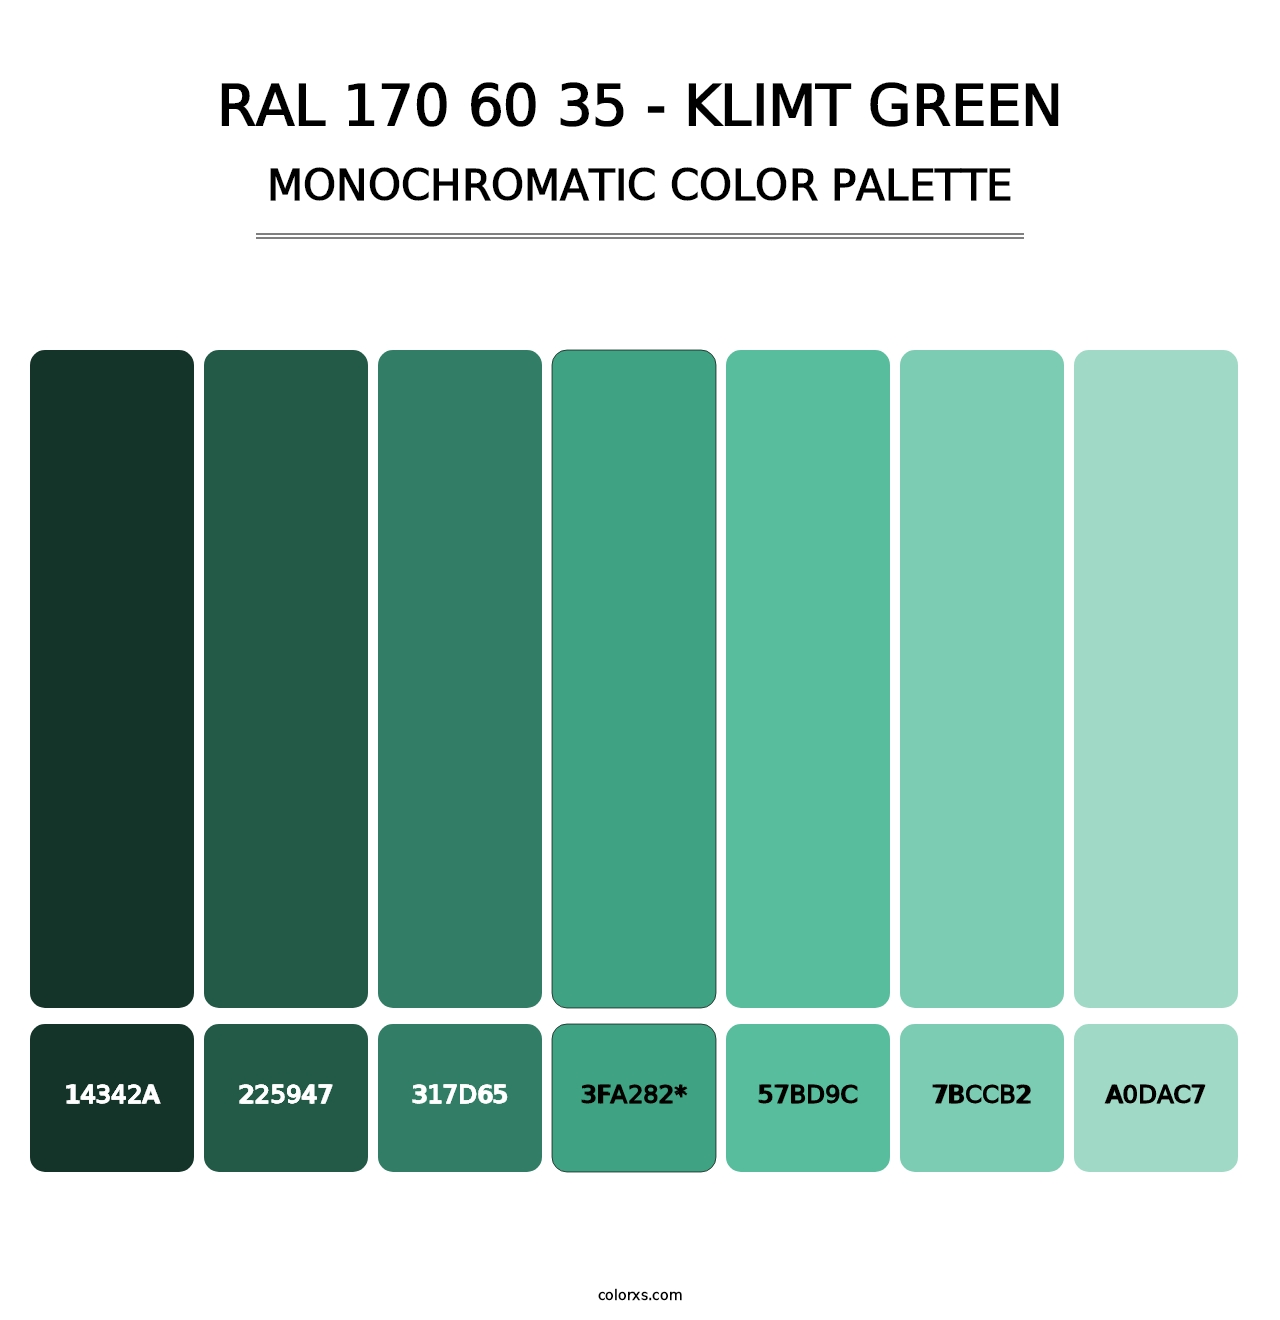 RAL 170 60 35 - Klimt Green - Monochromatic Color Palette